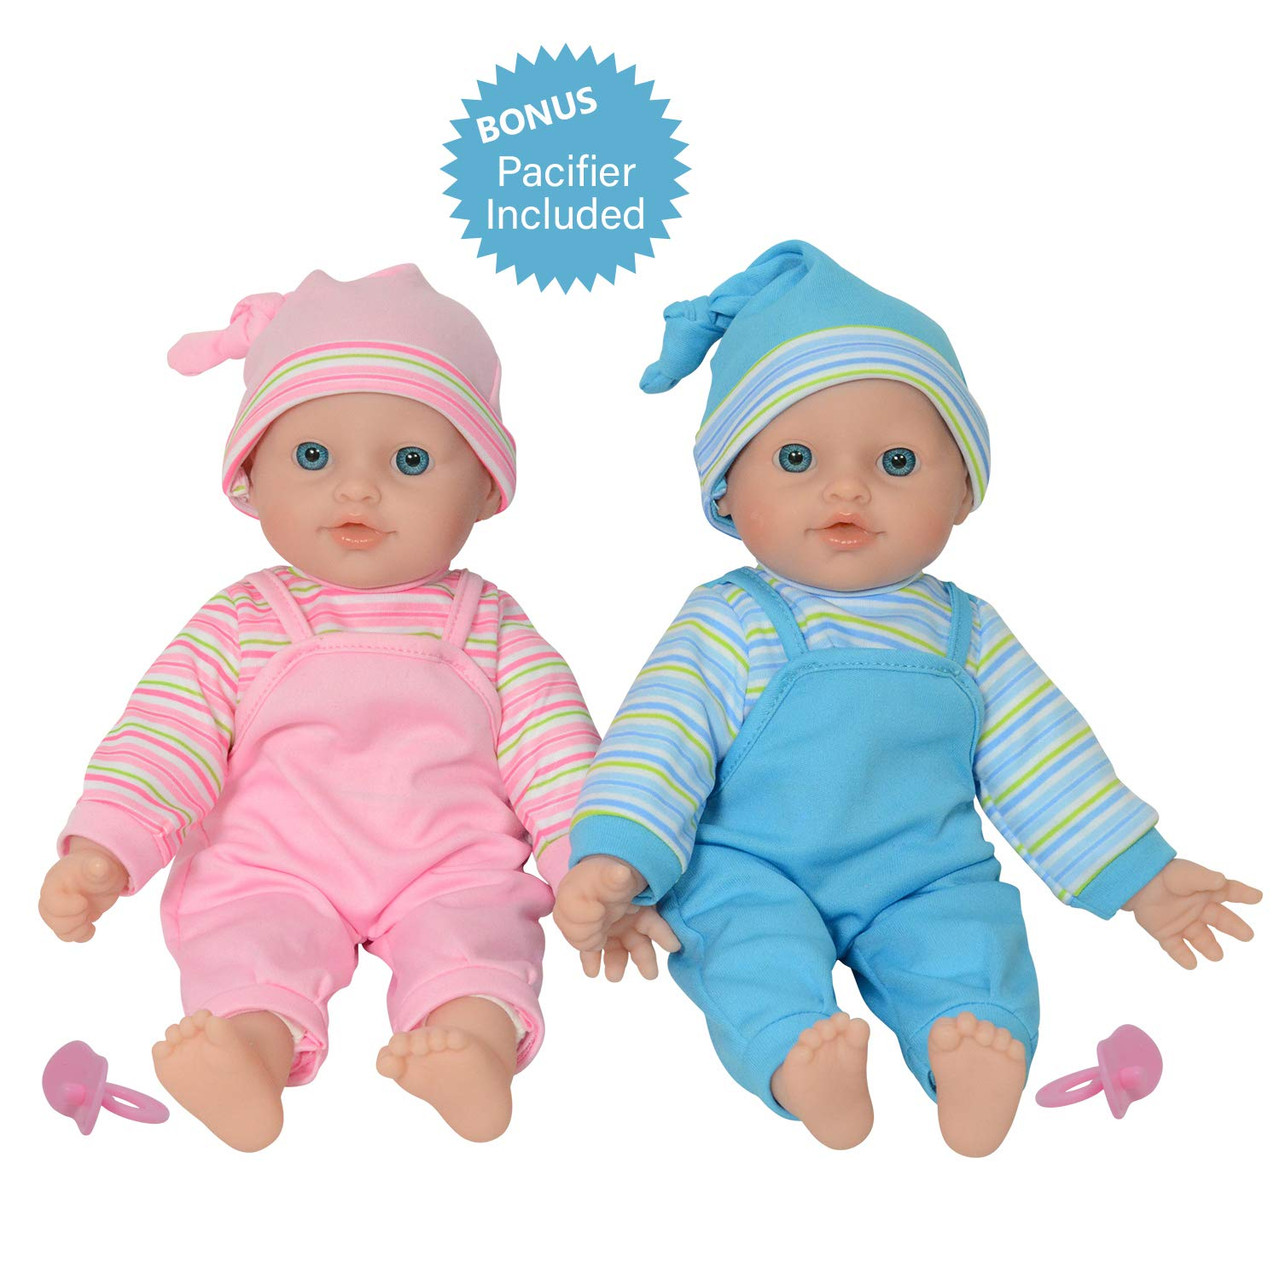 soft baby dolls